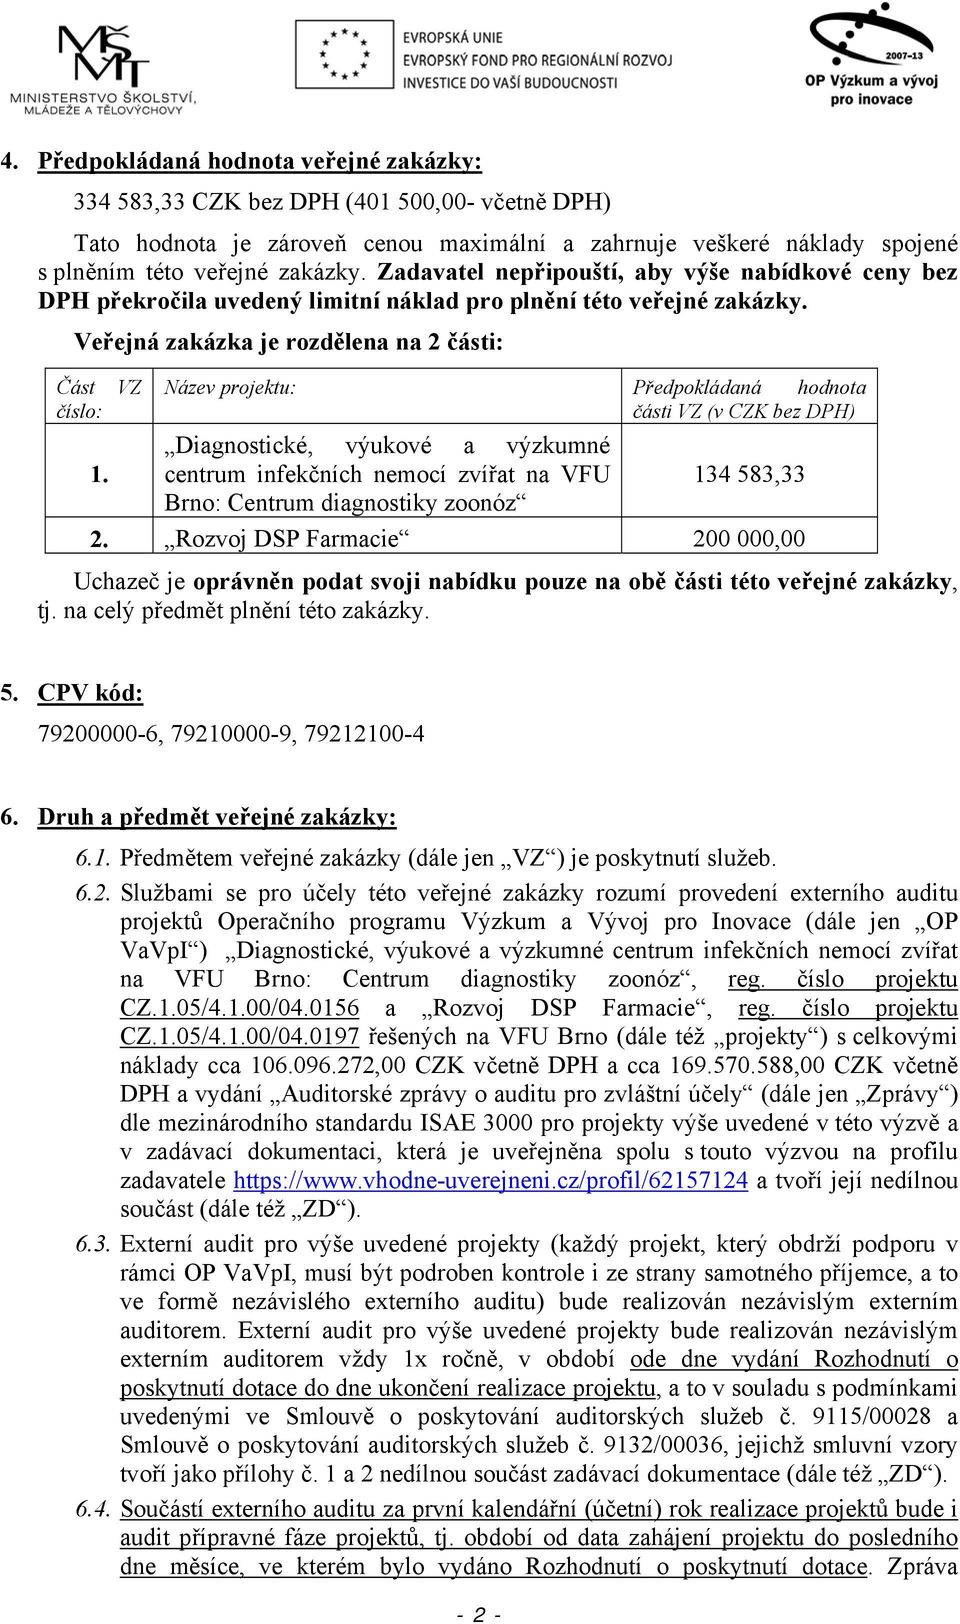 VZ Název projektu: Předpokládaná hodnota části VZ (v CZK bez DPH) Diagnostické, výukové a výzkumné centrum infekčních nemocí zvířat na VFU 134 583,33 Brno: Centrum diagnostiky zoonóz 2.